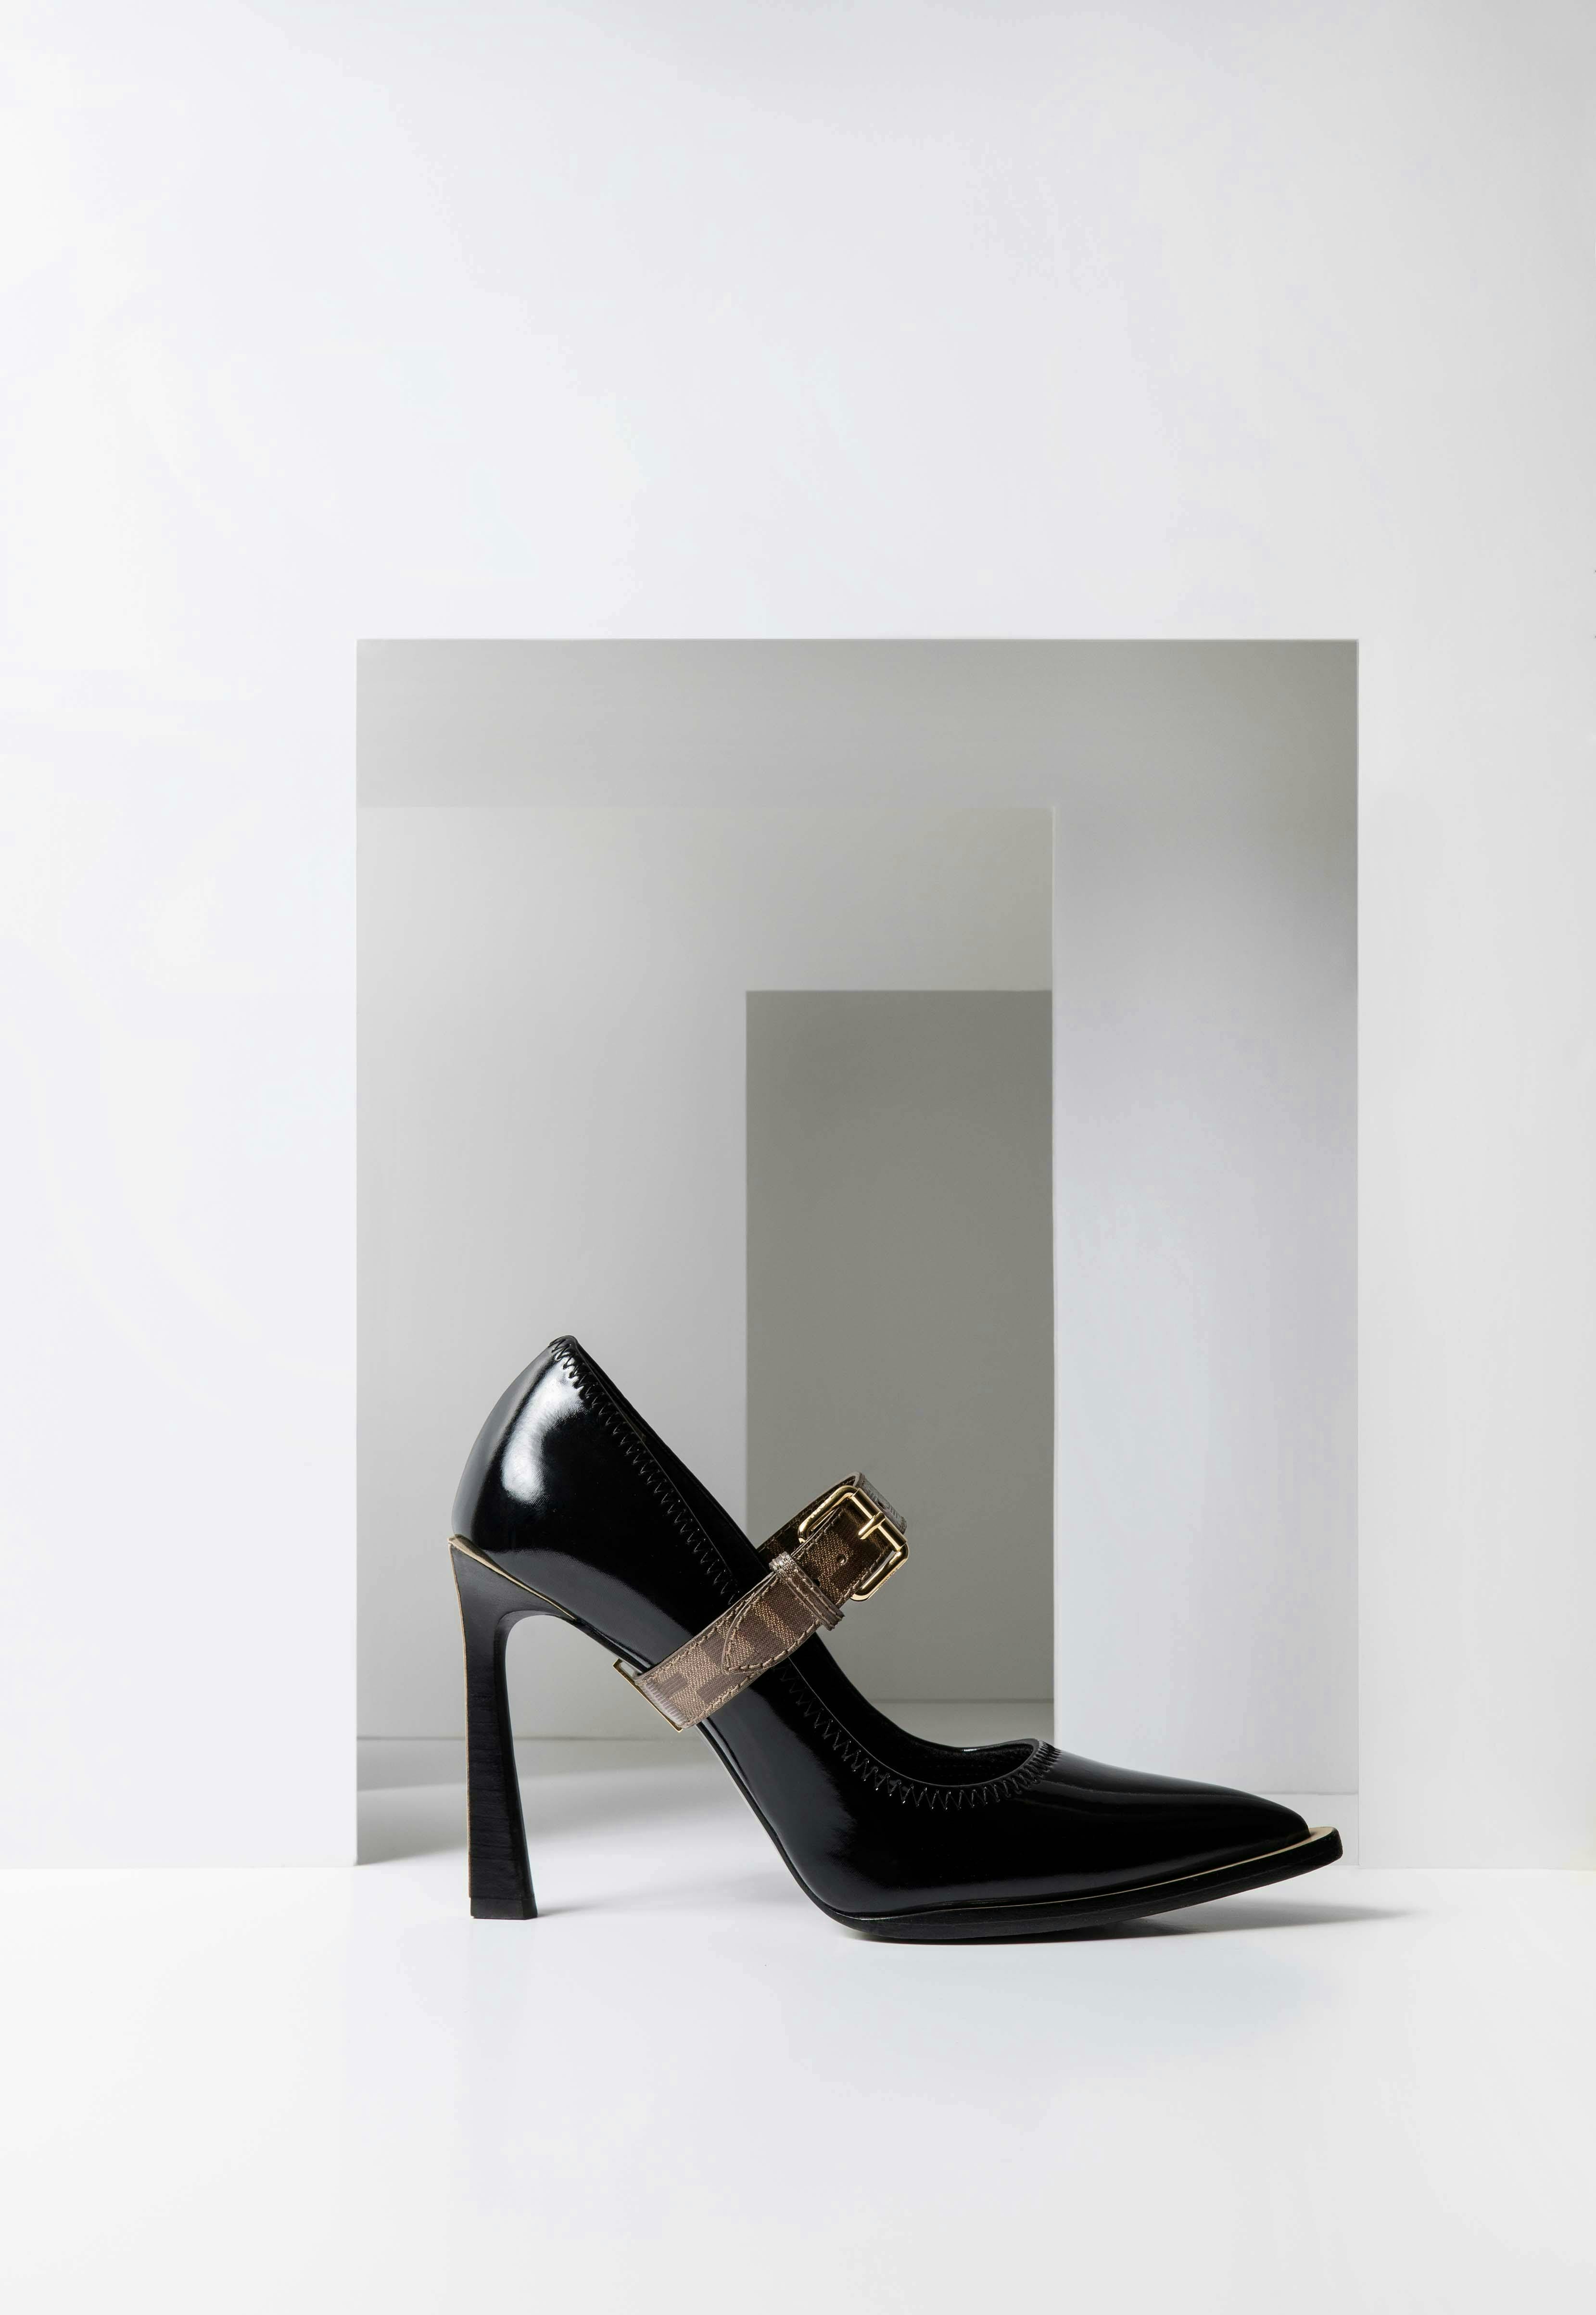 clothing apparel shoe footwear high heel